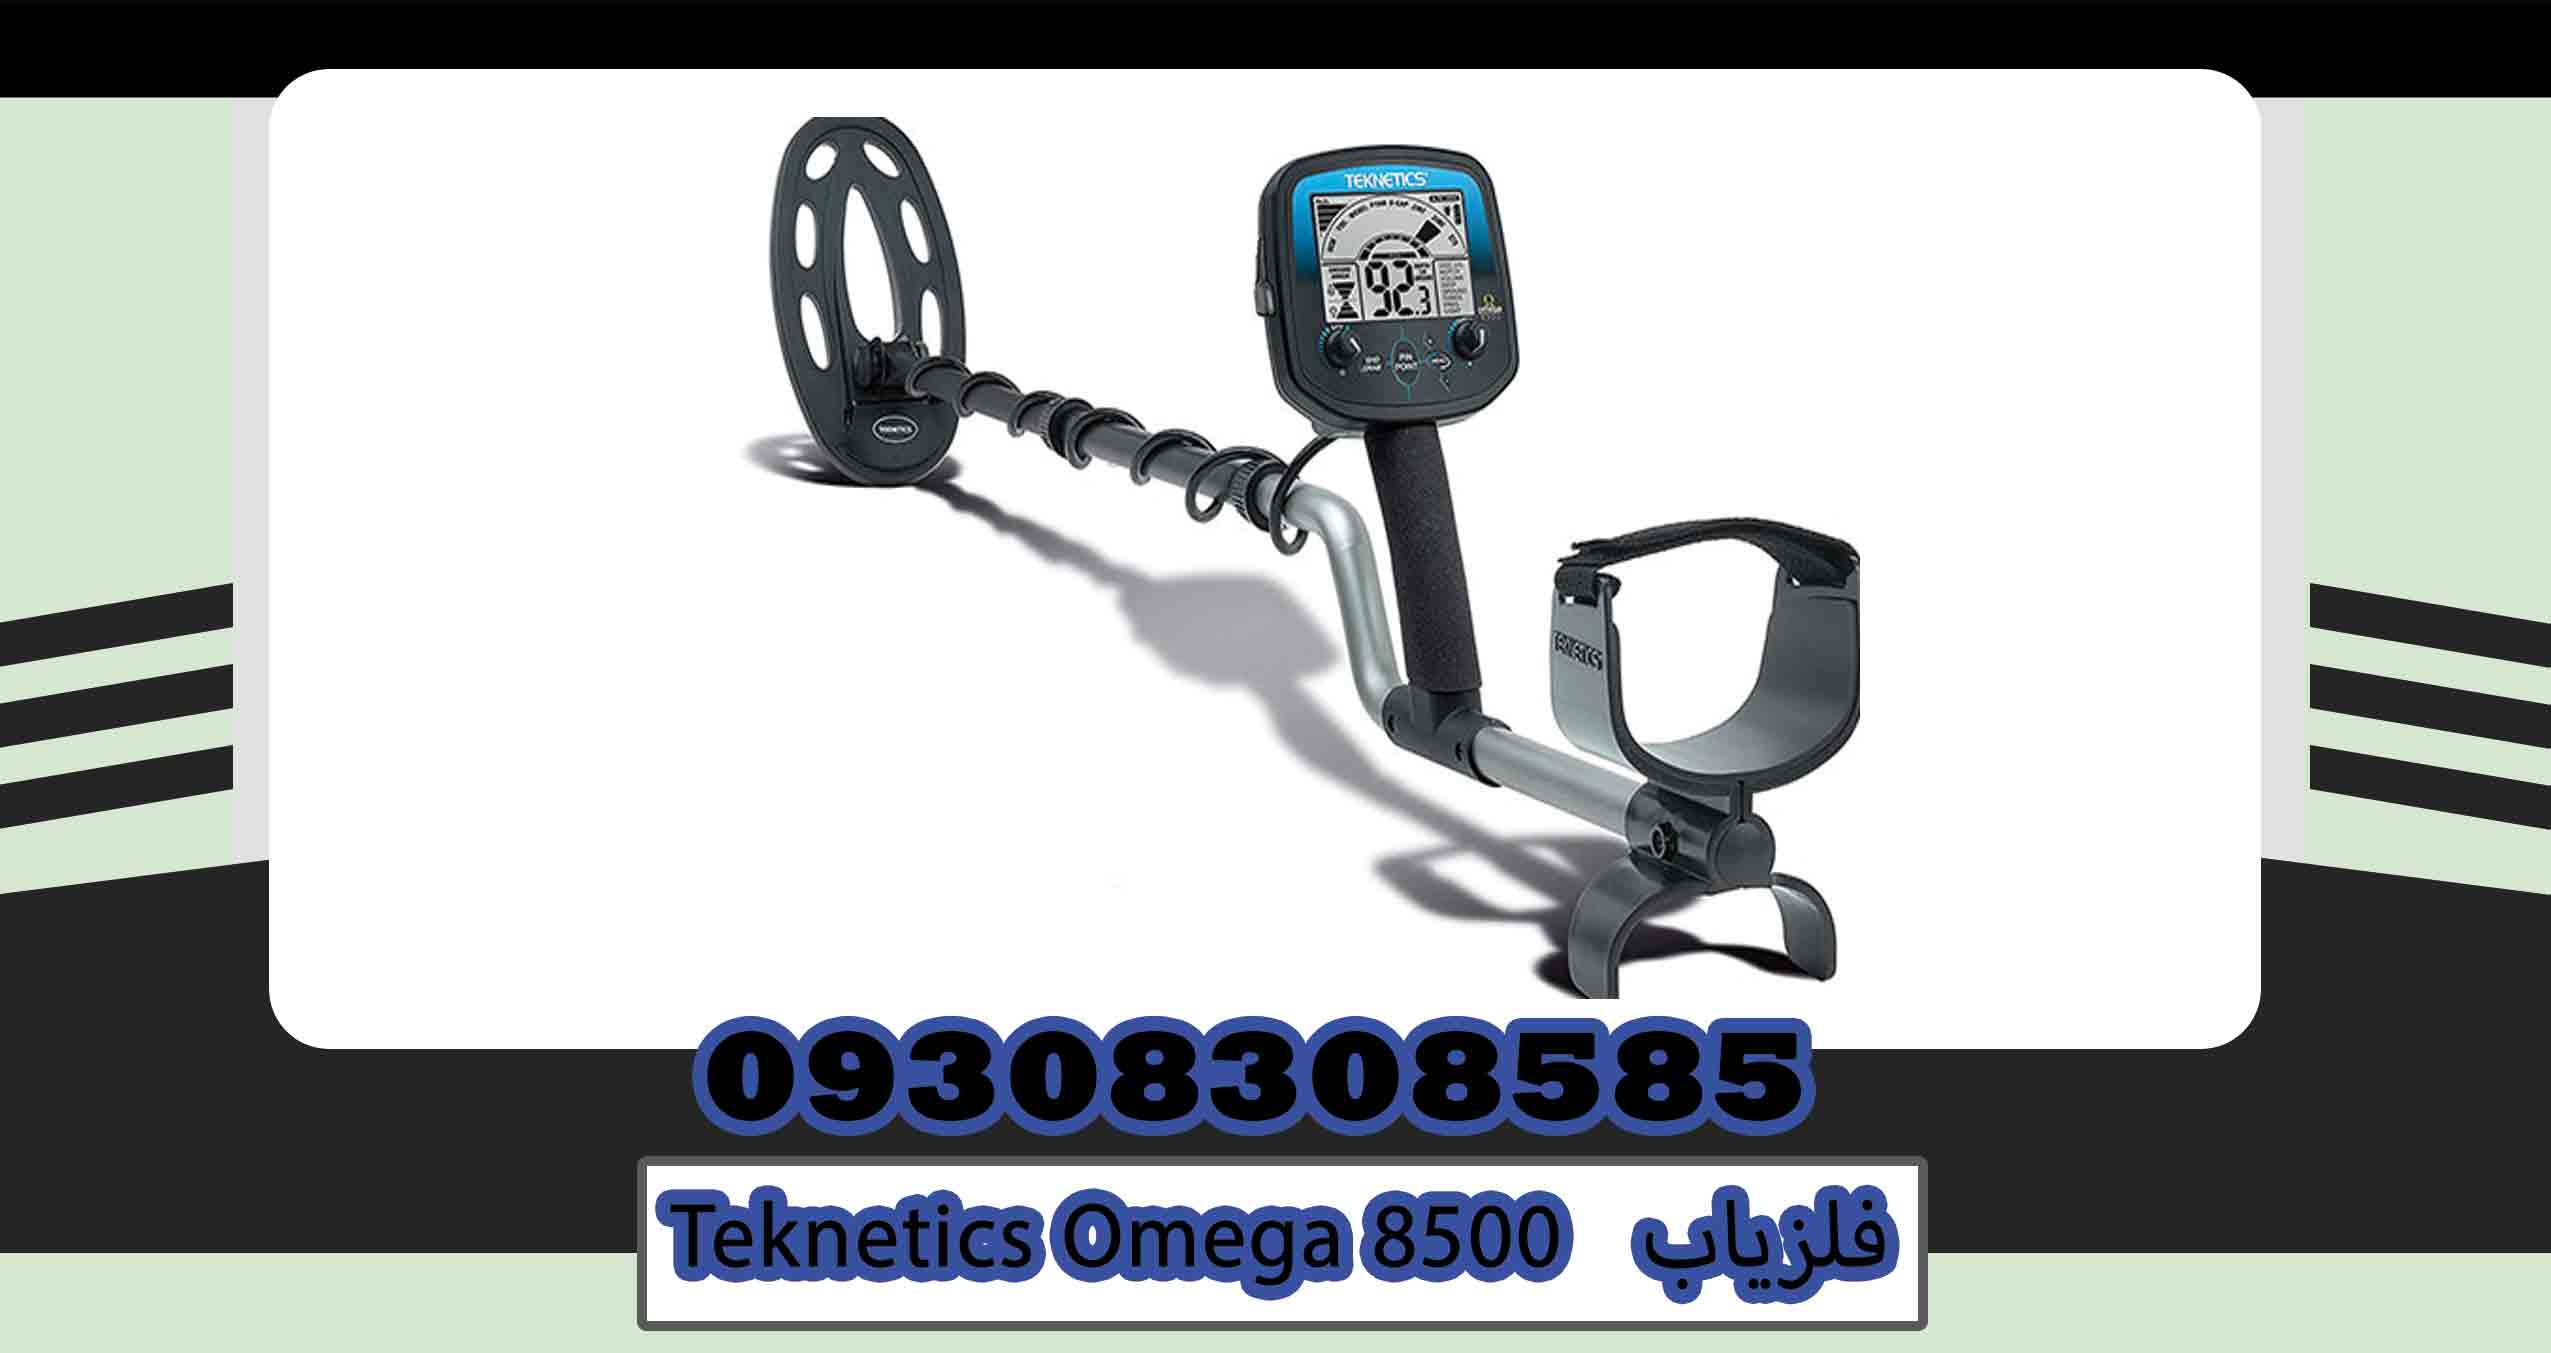 Teknetics Omega 8500